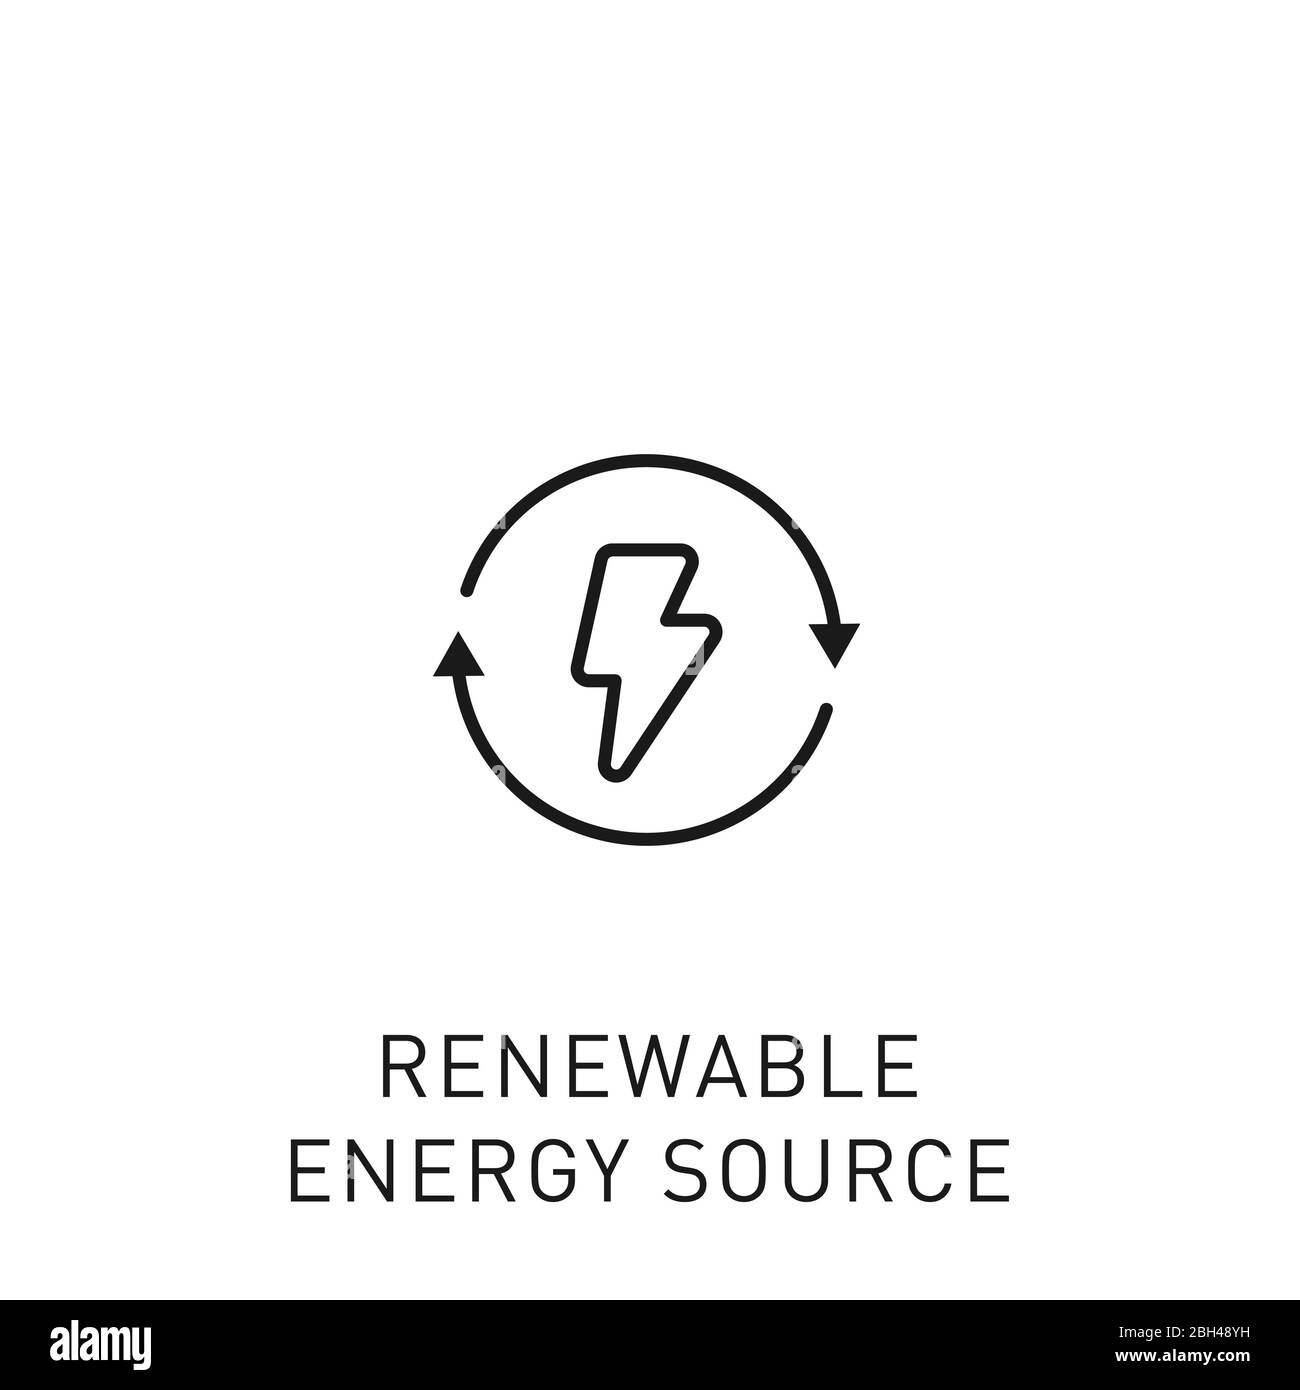 Symbol für erneuerbare Energiequelle mit dünner Linie. Gestaltungselement für erneuerbare Energien, grüne Technologie. Vektorgrafik. Stock Vektor